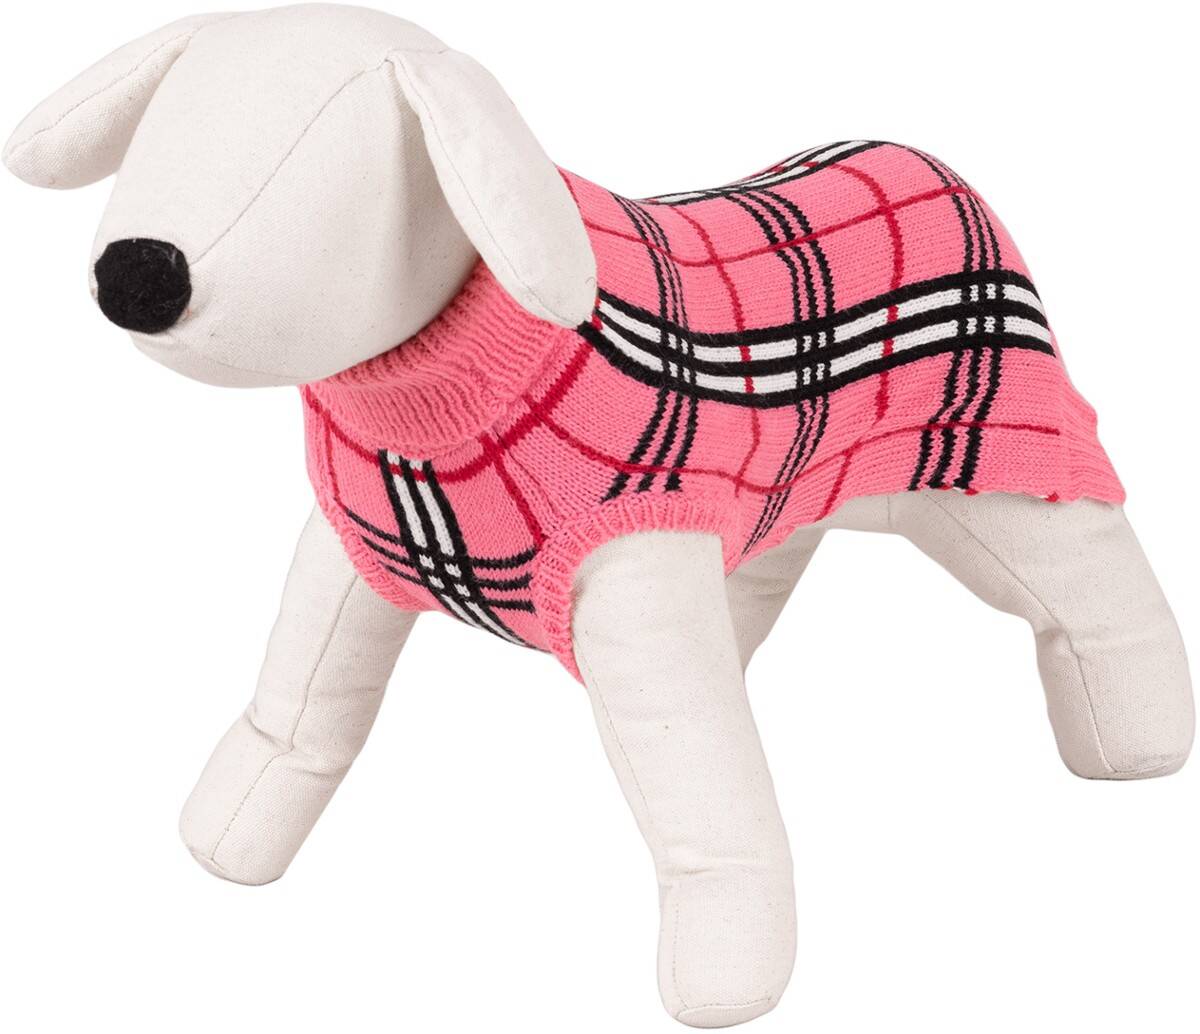 Golf-Pullover mit Schachbrettmuster  für einen Hund der Größe XL Happet 47XL rose Gitter  XL-40cm (Z-47XLRH)